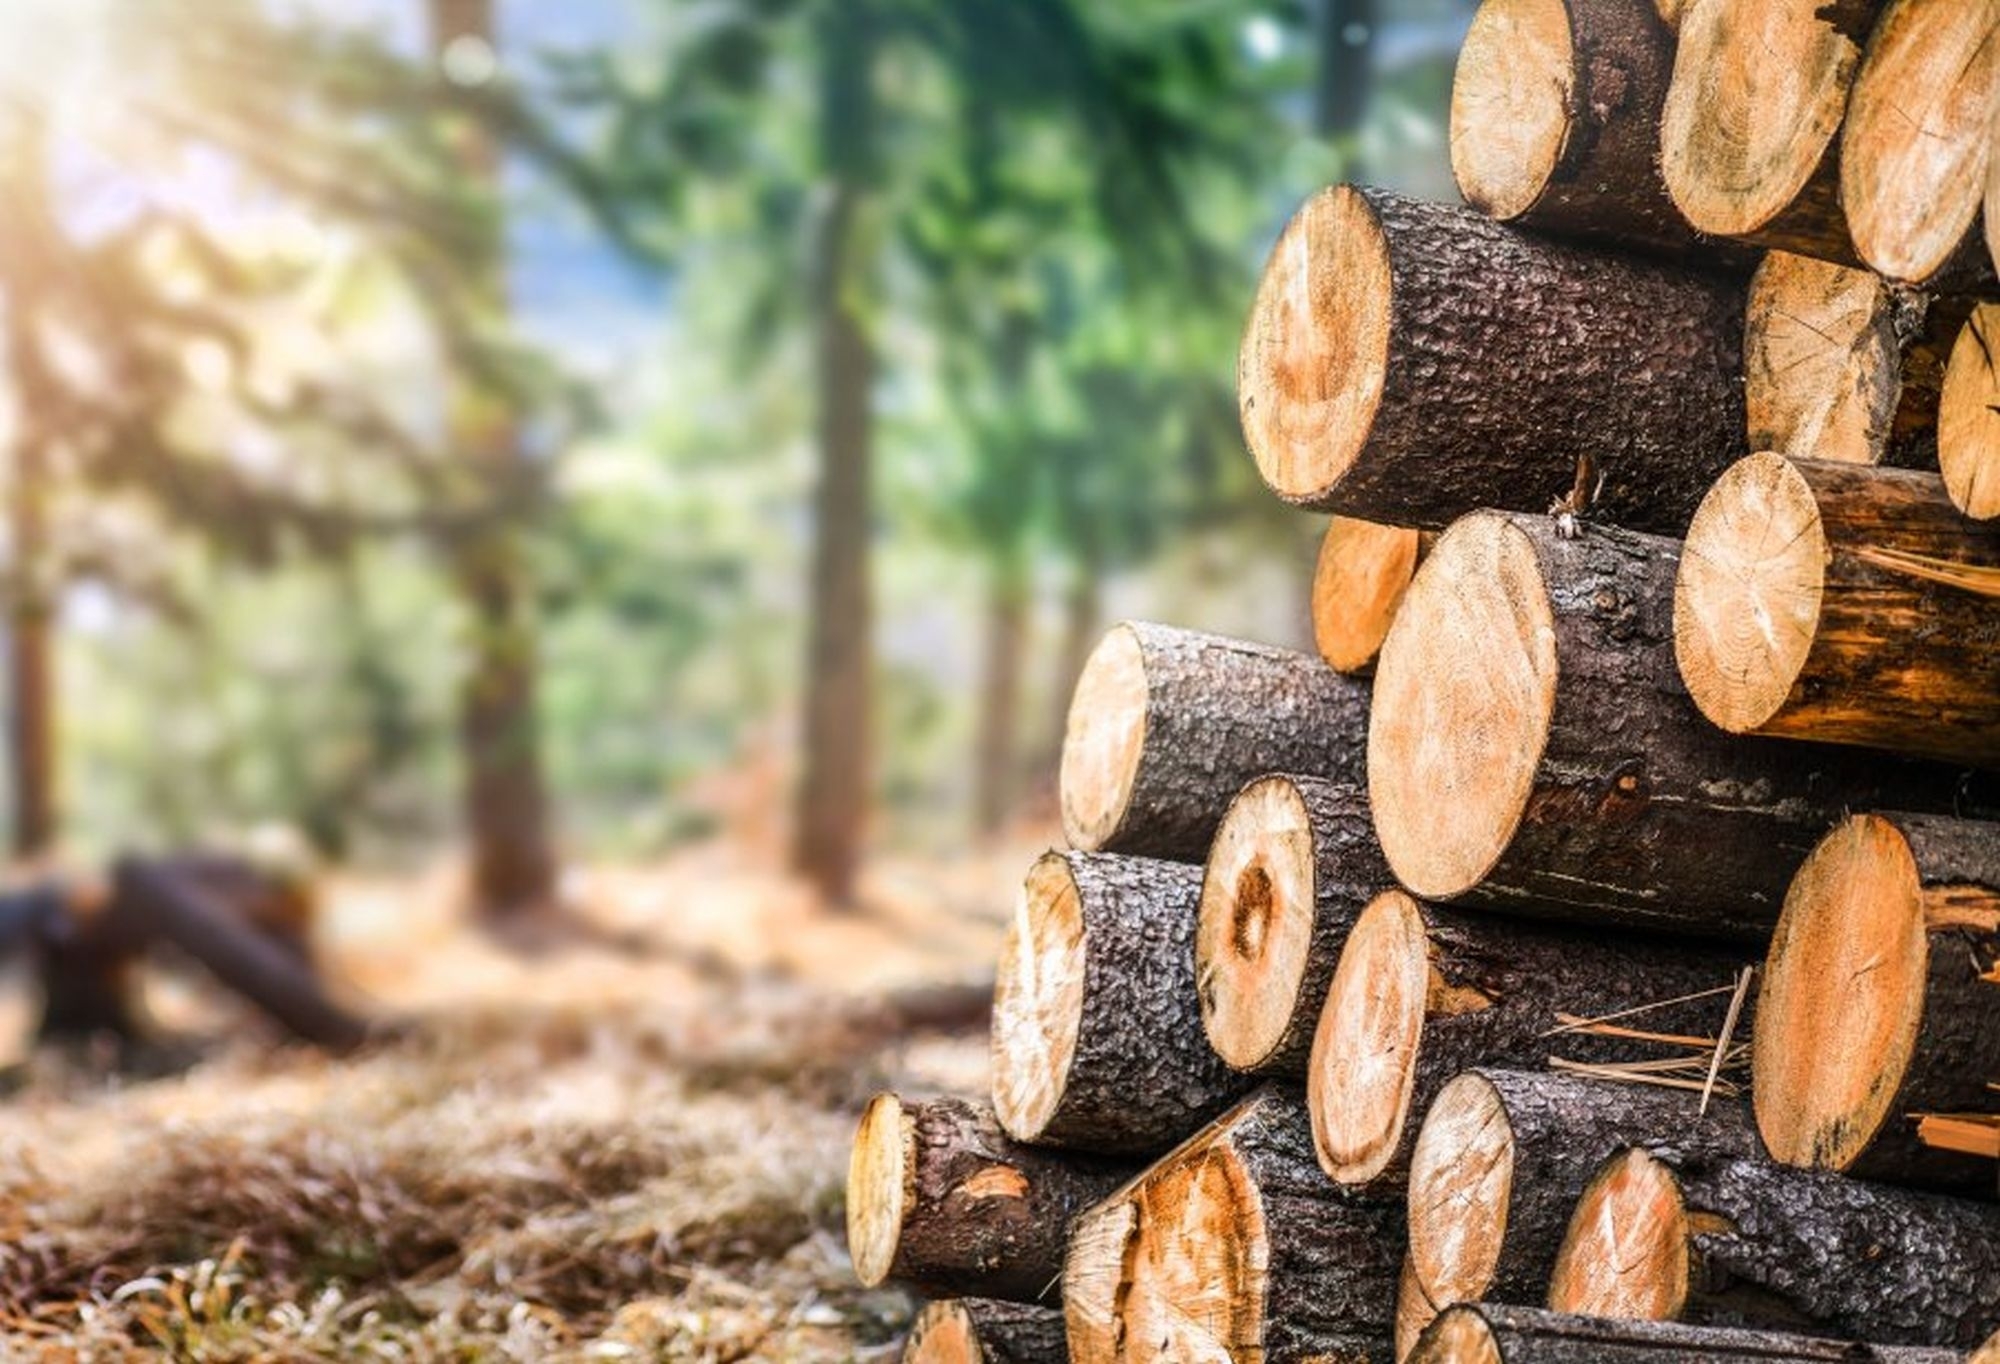 Žaliavinės medienos pardavimo tvarkos projektas gali lemti nuostolius valstybei